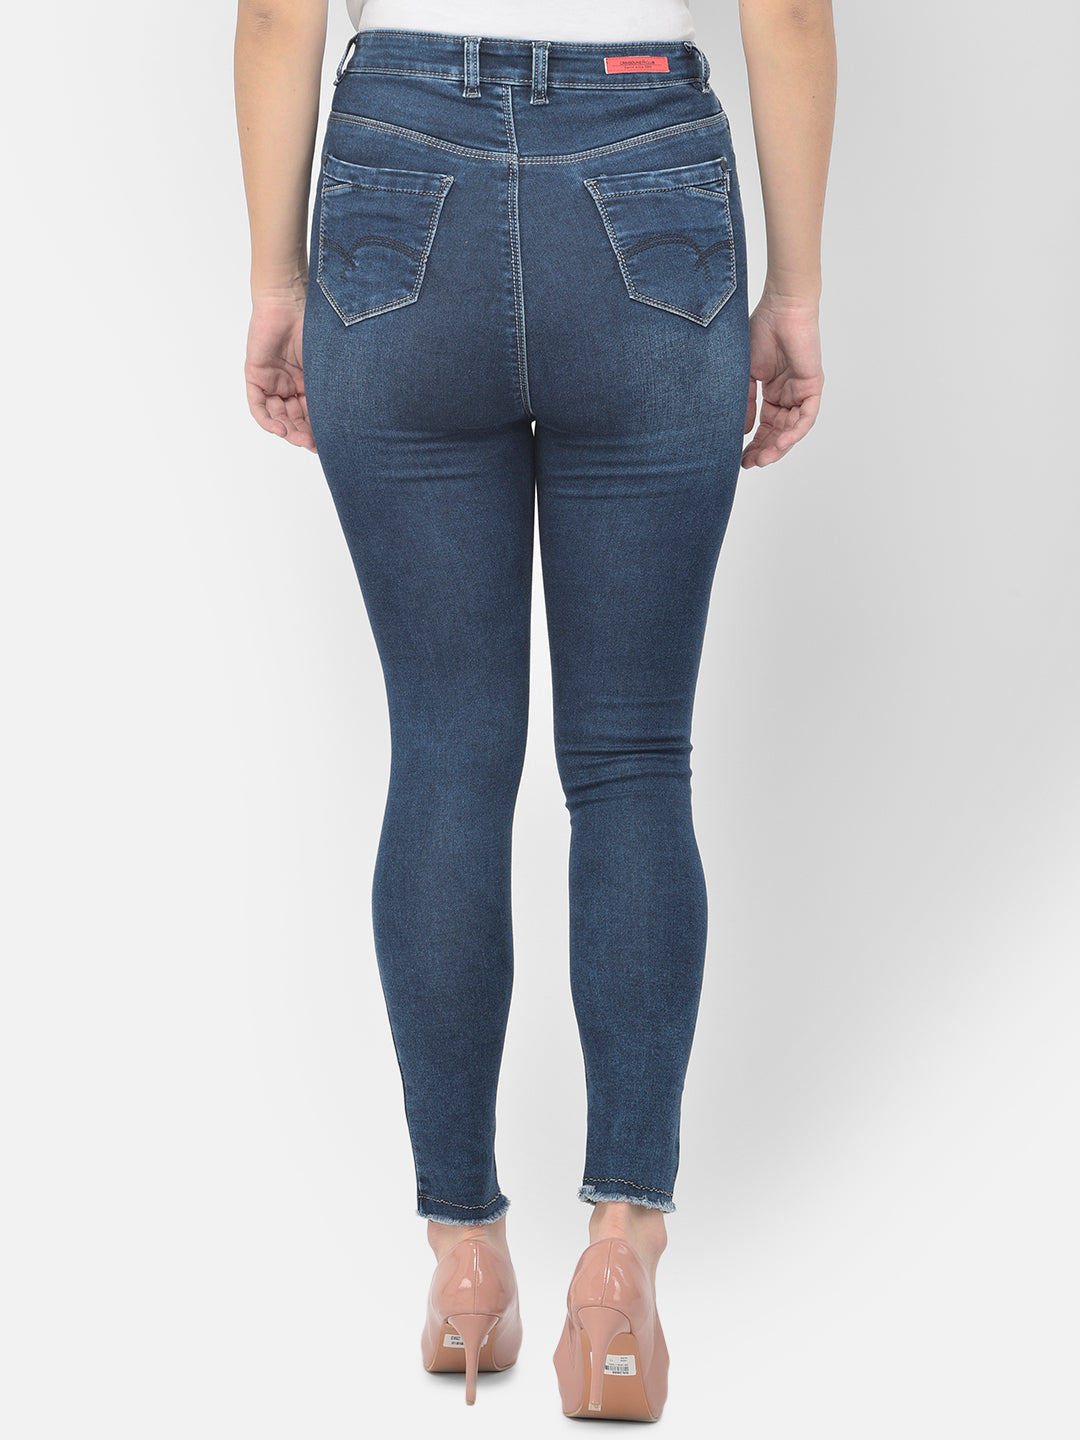 Blue High Waist jeans - Women Jeans